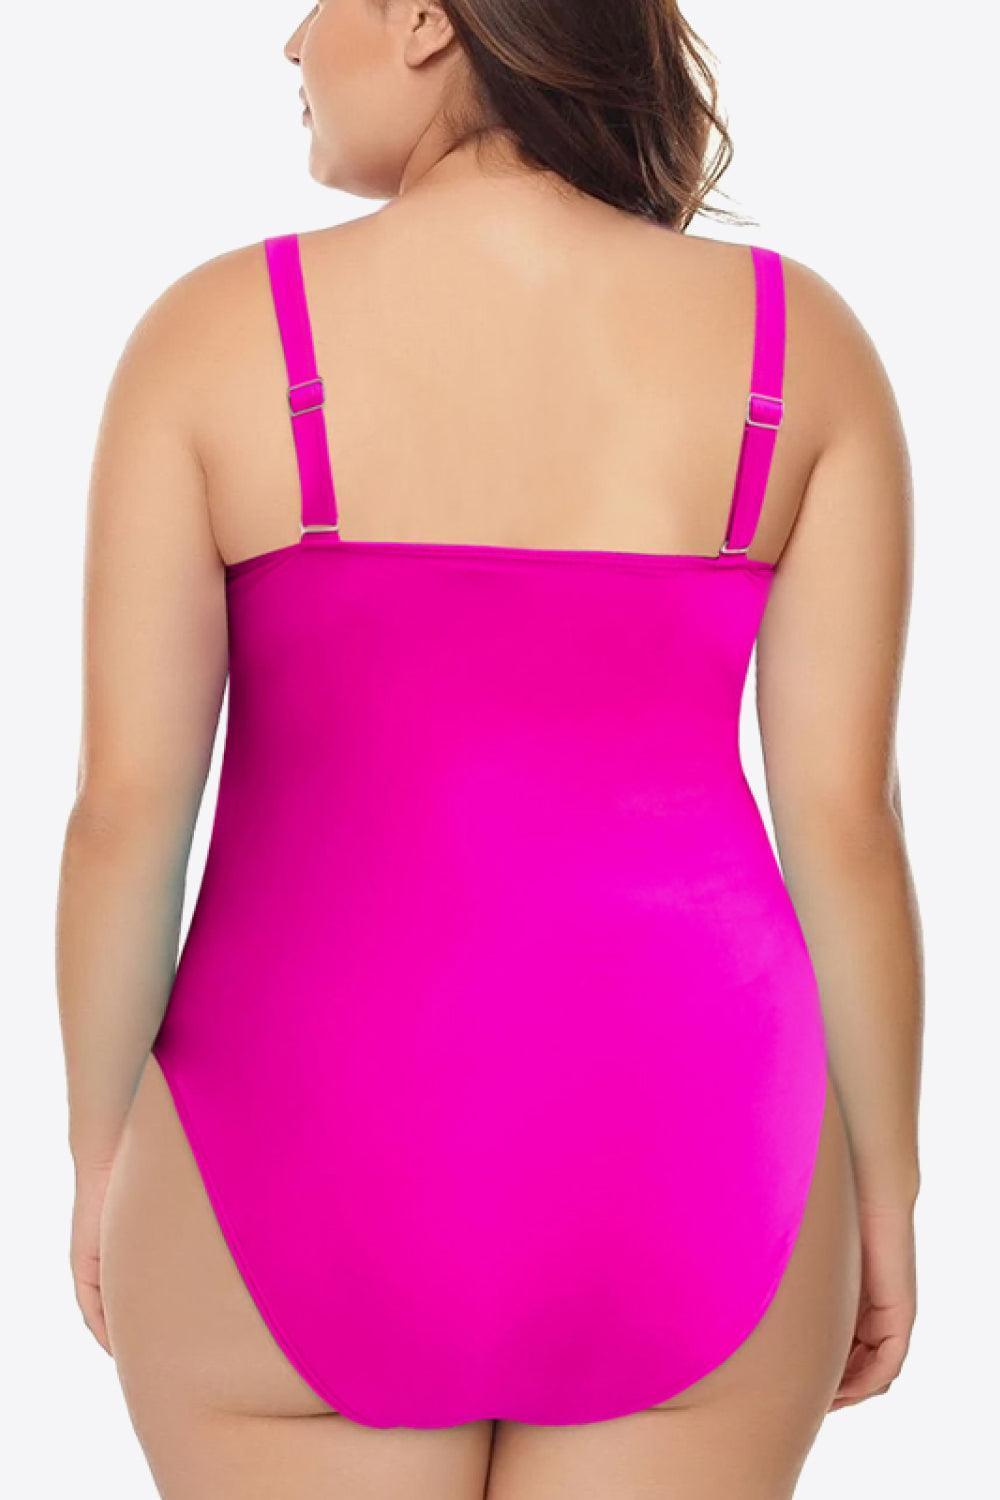 Sleeveless Plus Size Pink One Piece Swimsuit - MXSTUDIO.COM